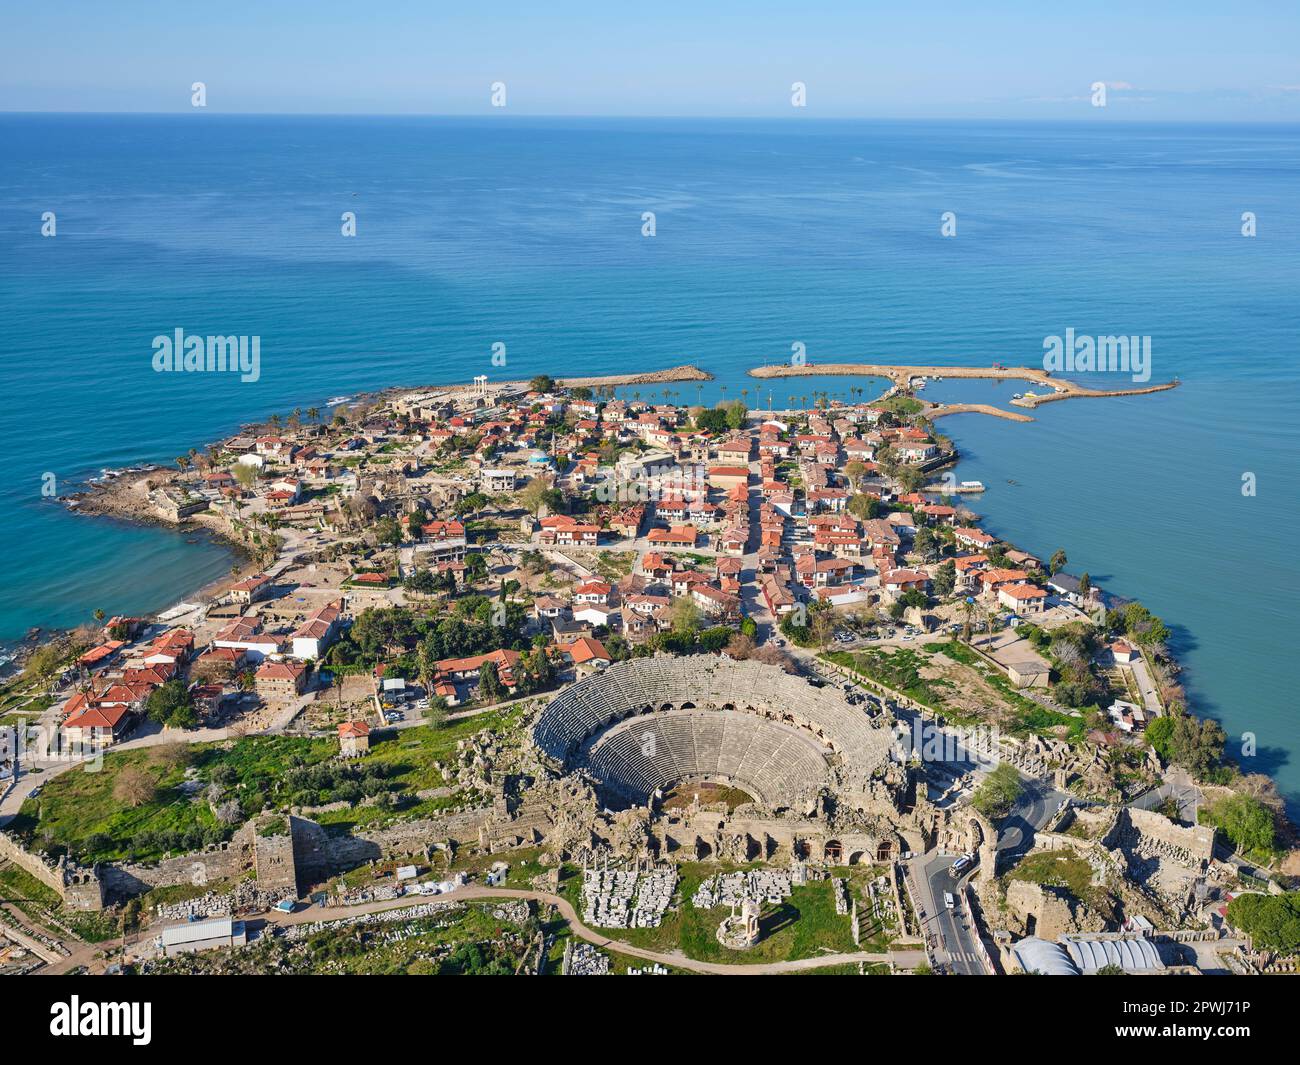 LUFTAUFNAHME. Die antike Stadt Sidé mit ihrem Theater. Sidé, Provinz Antalya, Anatolien, Türkei. Stockfoto